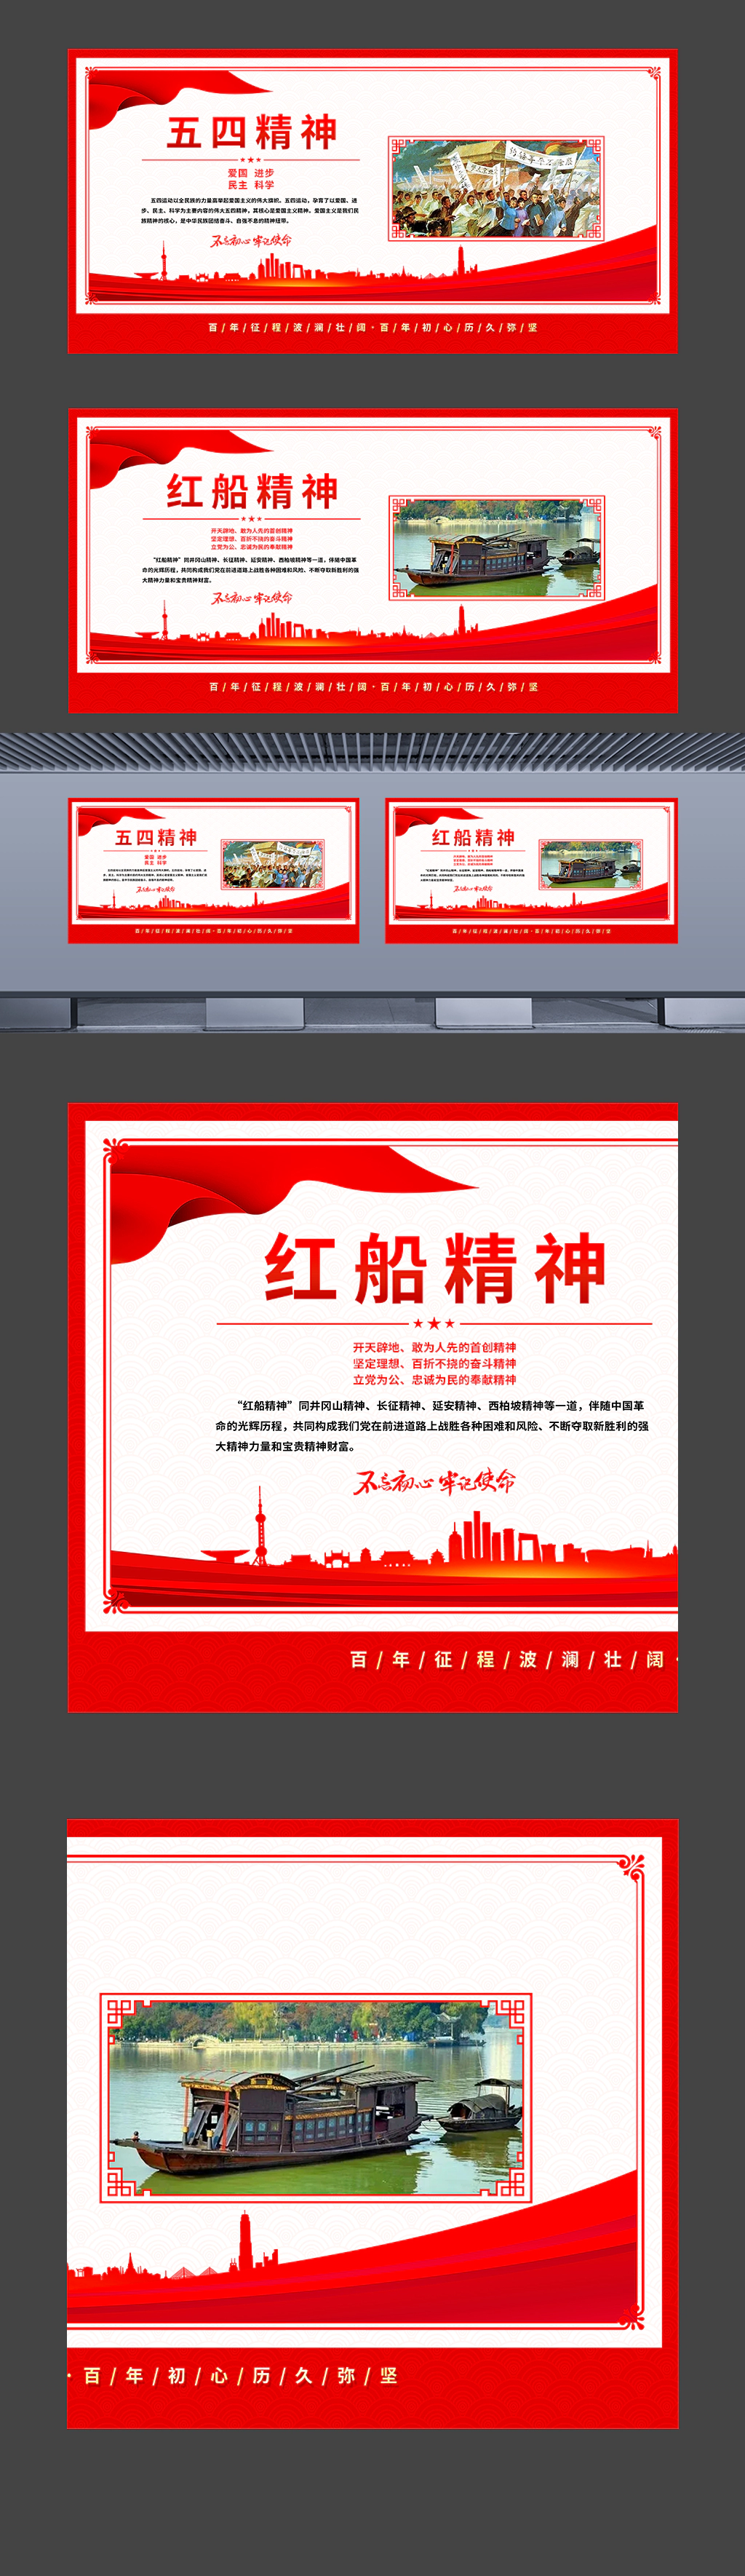 中国精神之五四精神红船精神等挂图海报